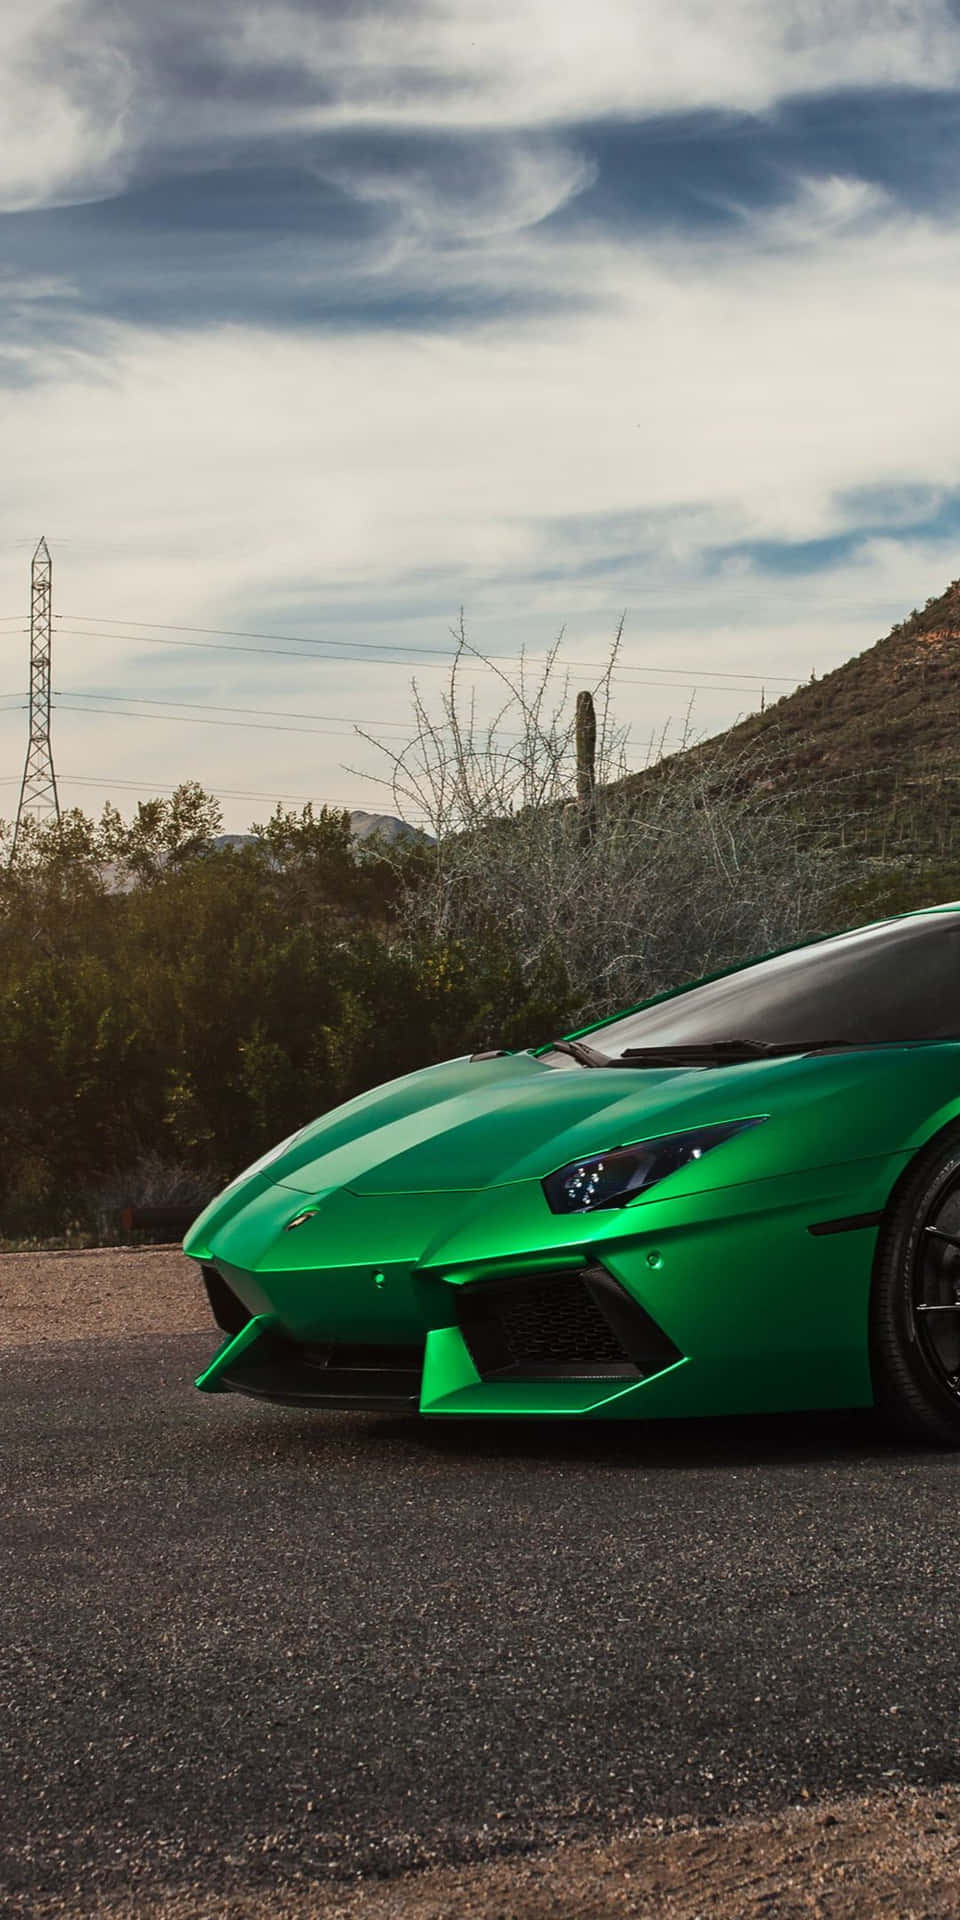 Engrön Lamborghini Parkerad Vid Vägkanten